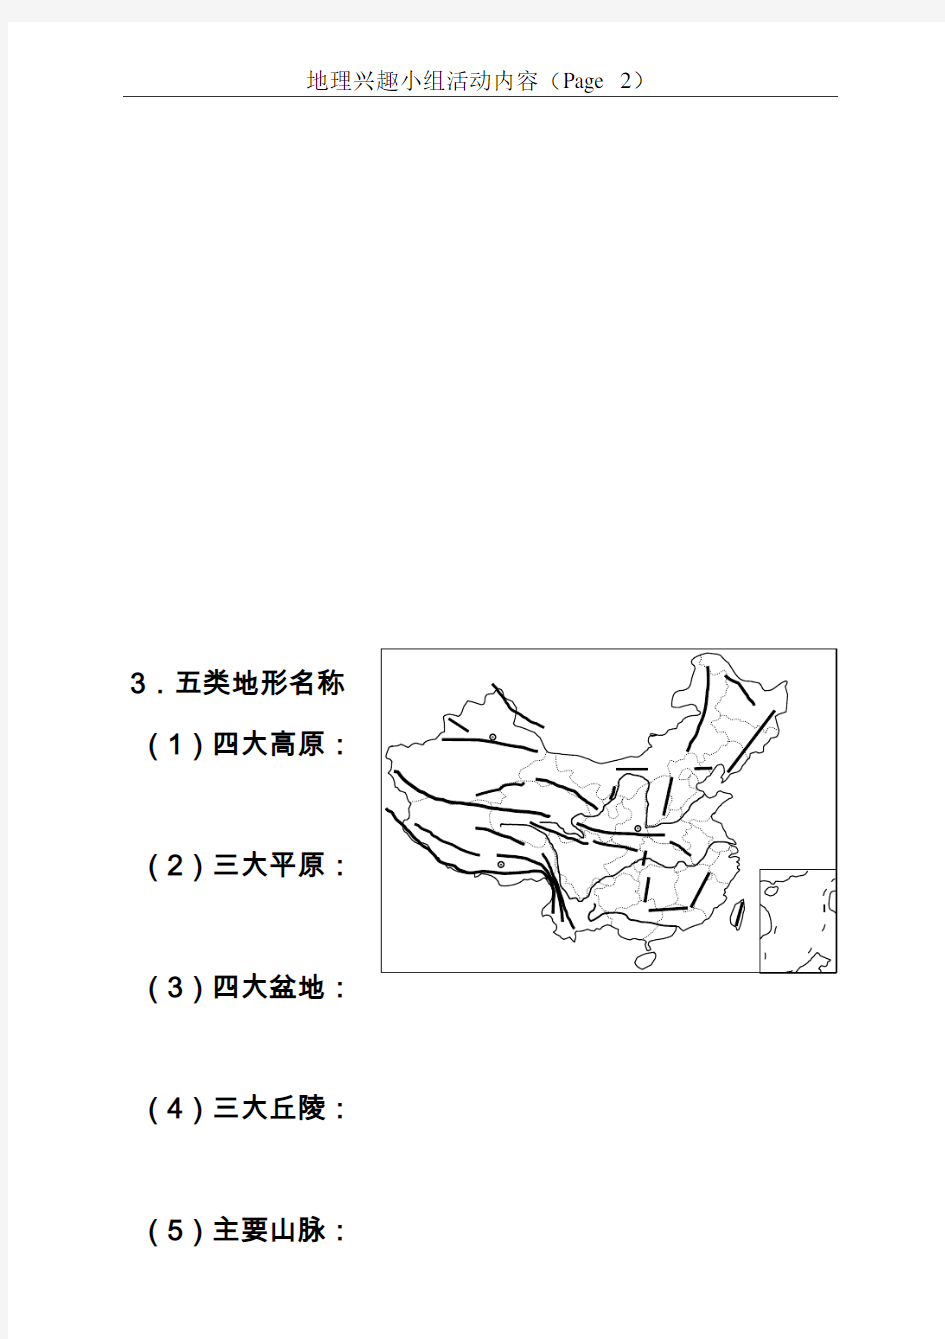 中国地理经典空白图名称和简称